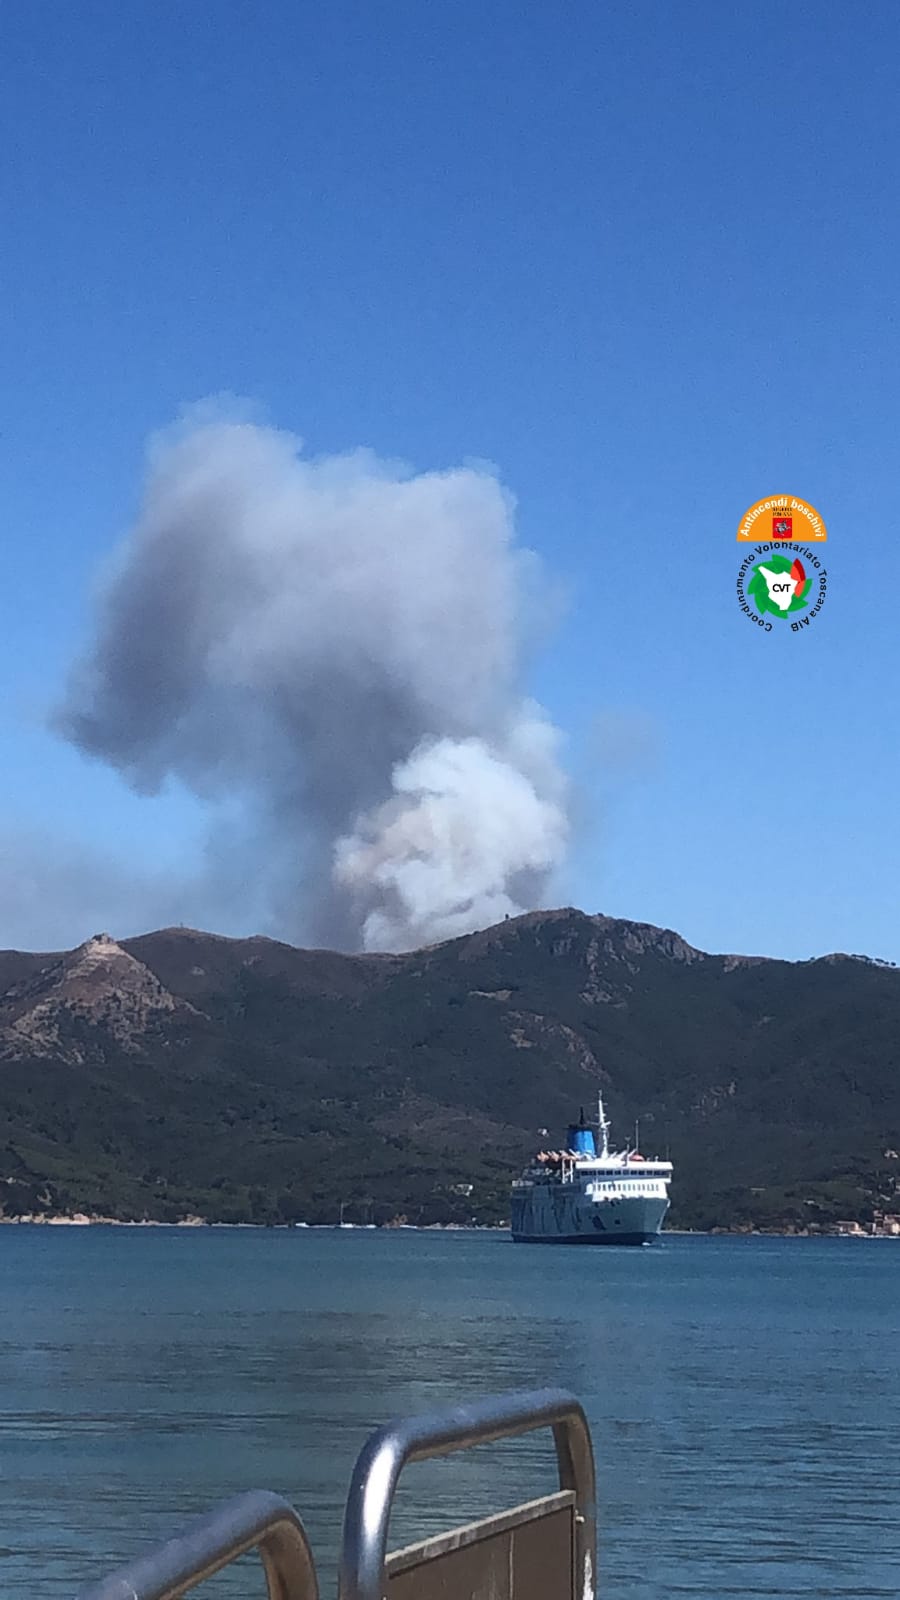 Incendio boschivo in località Capo D'Arco, all'Elba